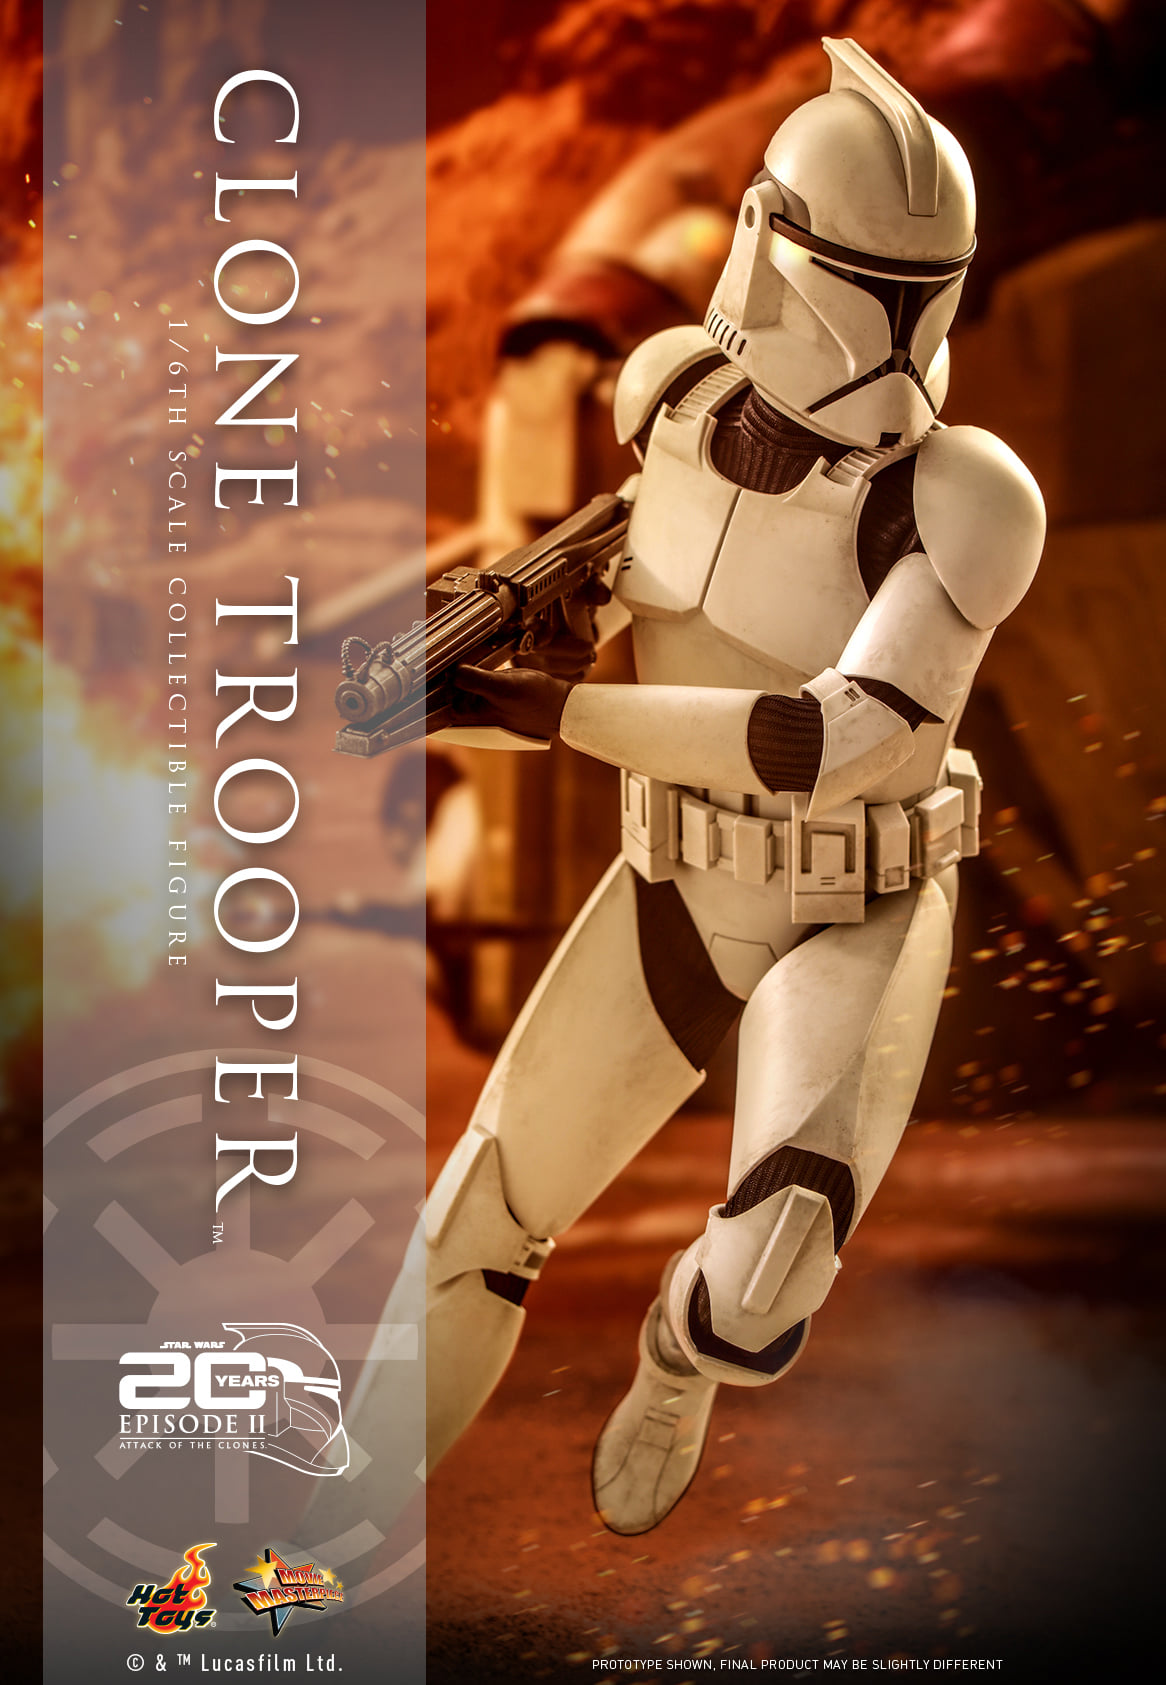 Clonetrooper 16